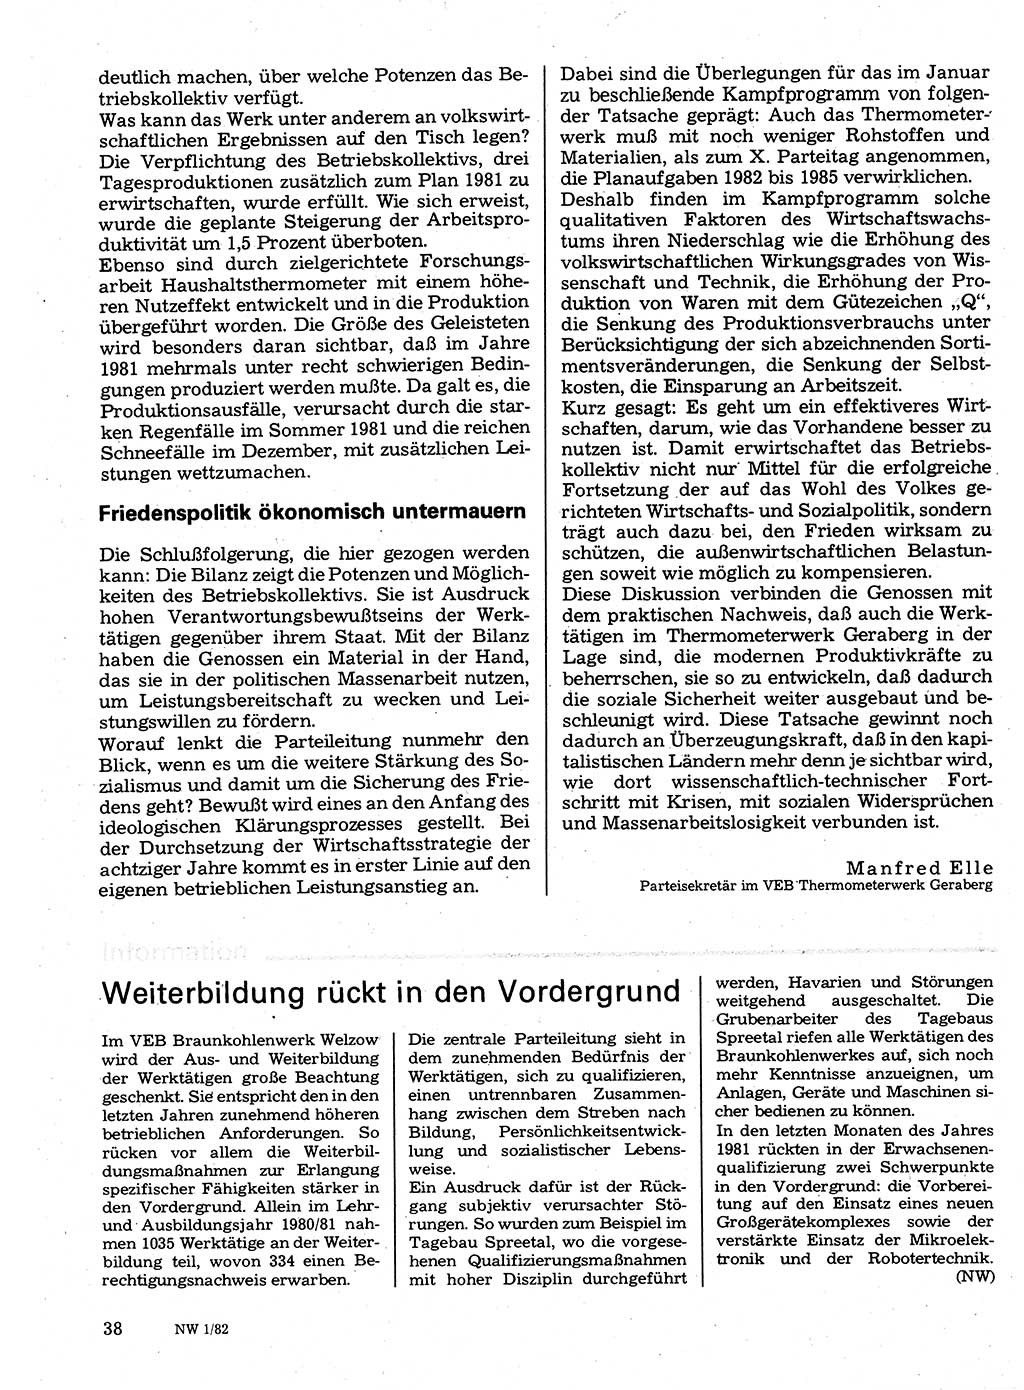 Neuer Weg (NW), Organ des Zentralkomitees (ZK) der SED (Sozialistische Einheitspartei Deutschlands) für Fragen des Parteilebens, 37. Jahrgang [Deutsche Demokratische Republik (DDR)] 1982, Seite 38 (NW ZK SED DDR 1982, S. 38)